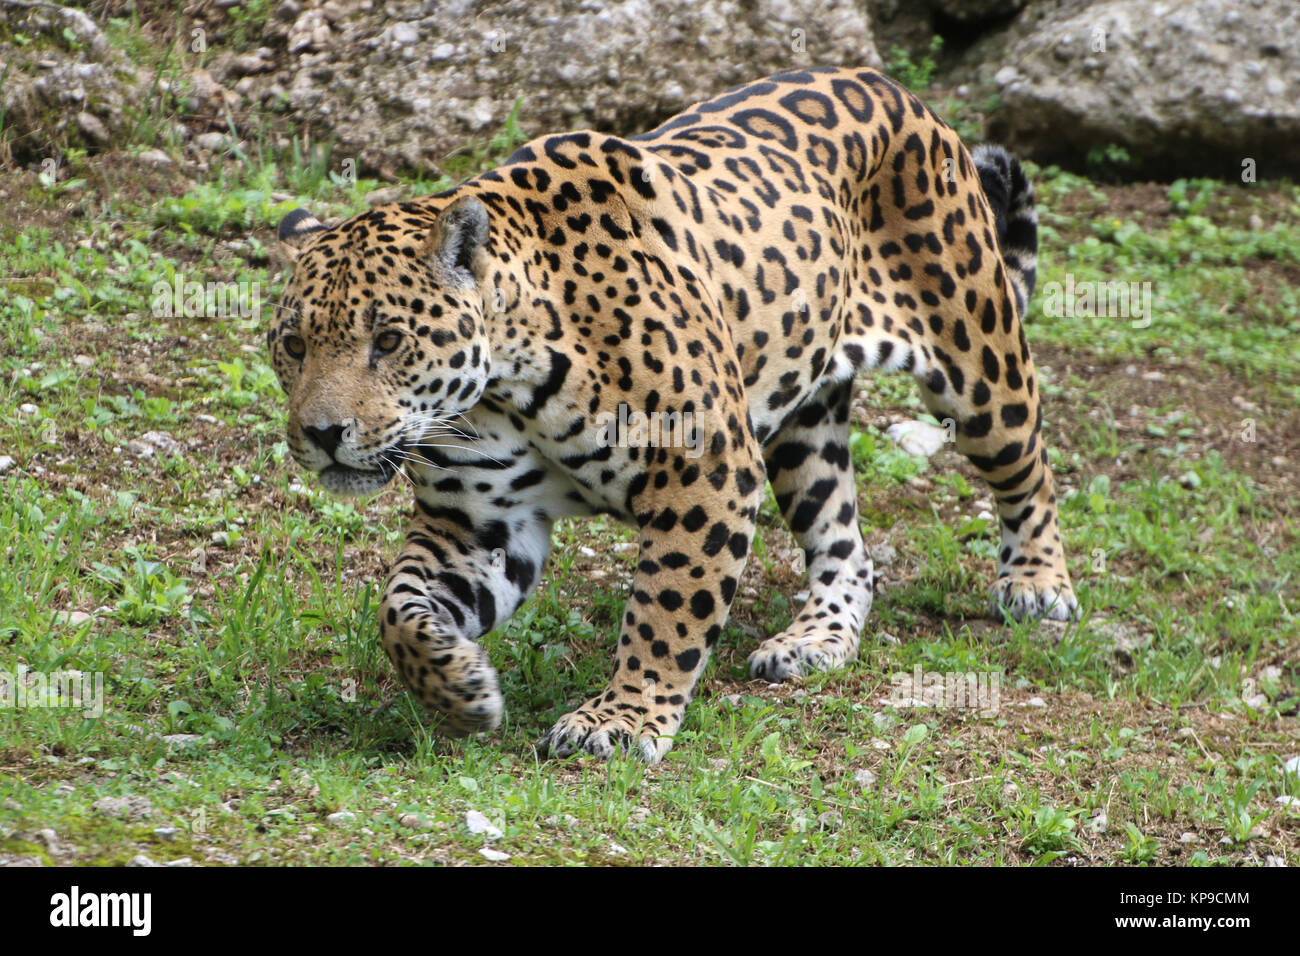 Jaguar schleicht sich an Beute ran Foto Stock